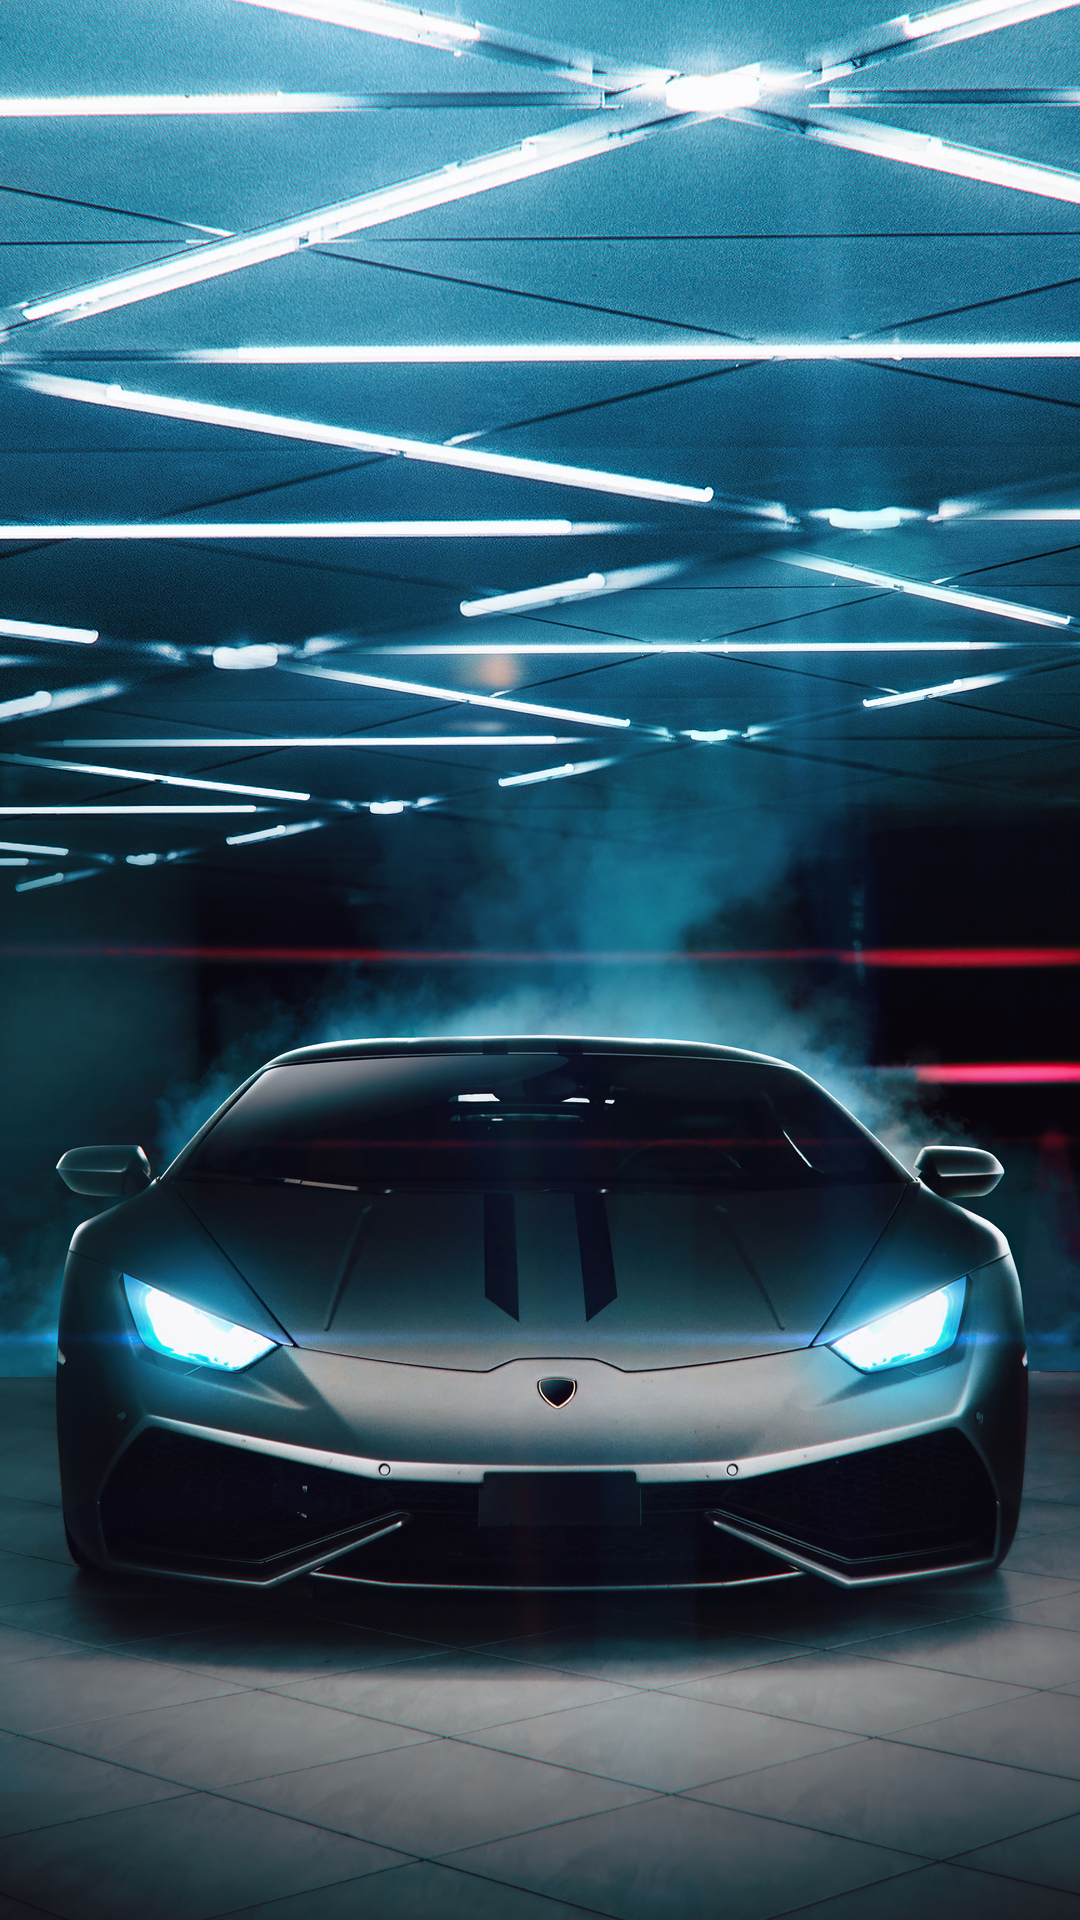 Hãy đem đẳng cấp của Lamborghini trên màn hình của bạn với những hình nền đẳng cấp của siêu xe nổi tiếng này. Bạn sẽ cảm thấy thoải mái và tự tin với những hình nền Lamborghini đẹp như tranh vẽ.